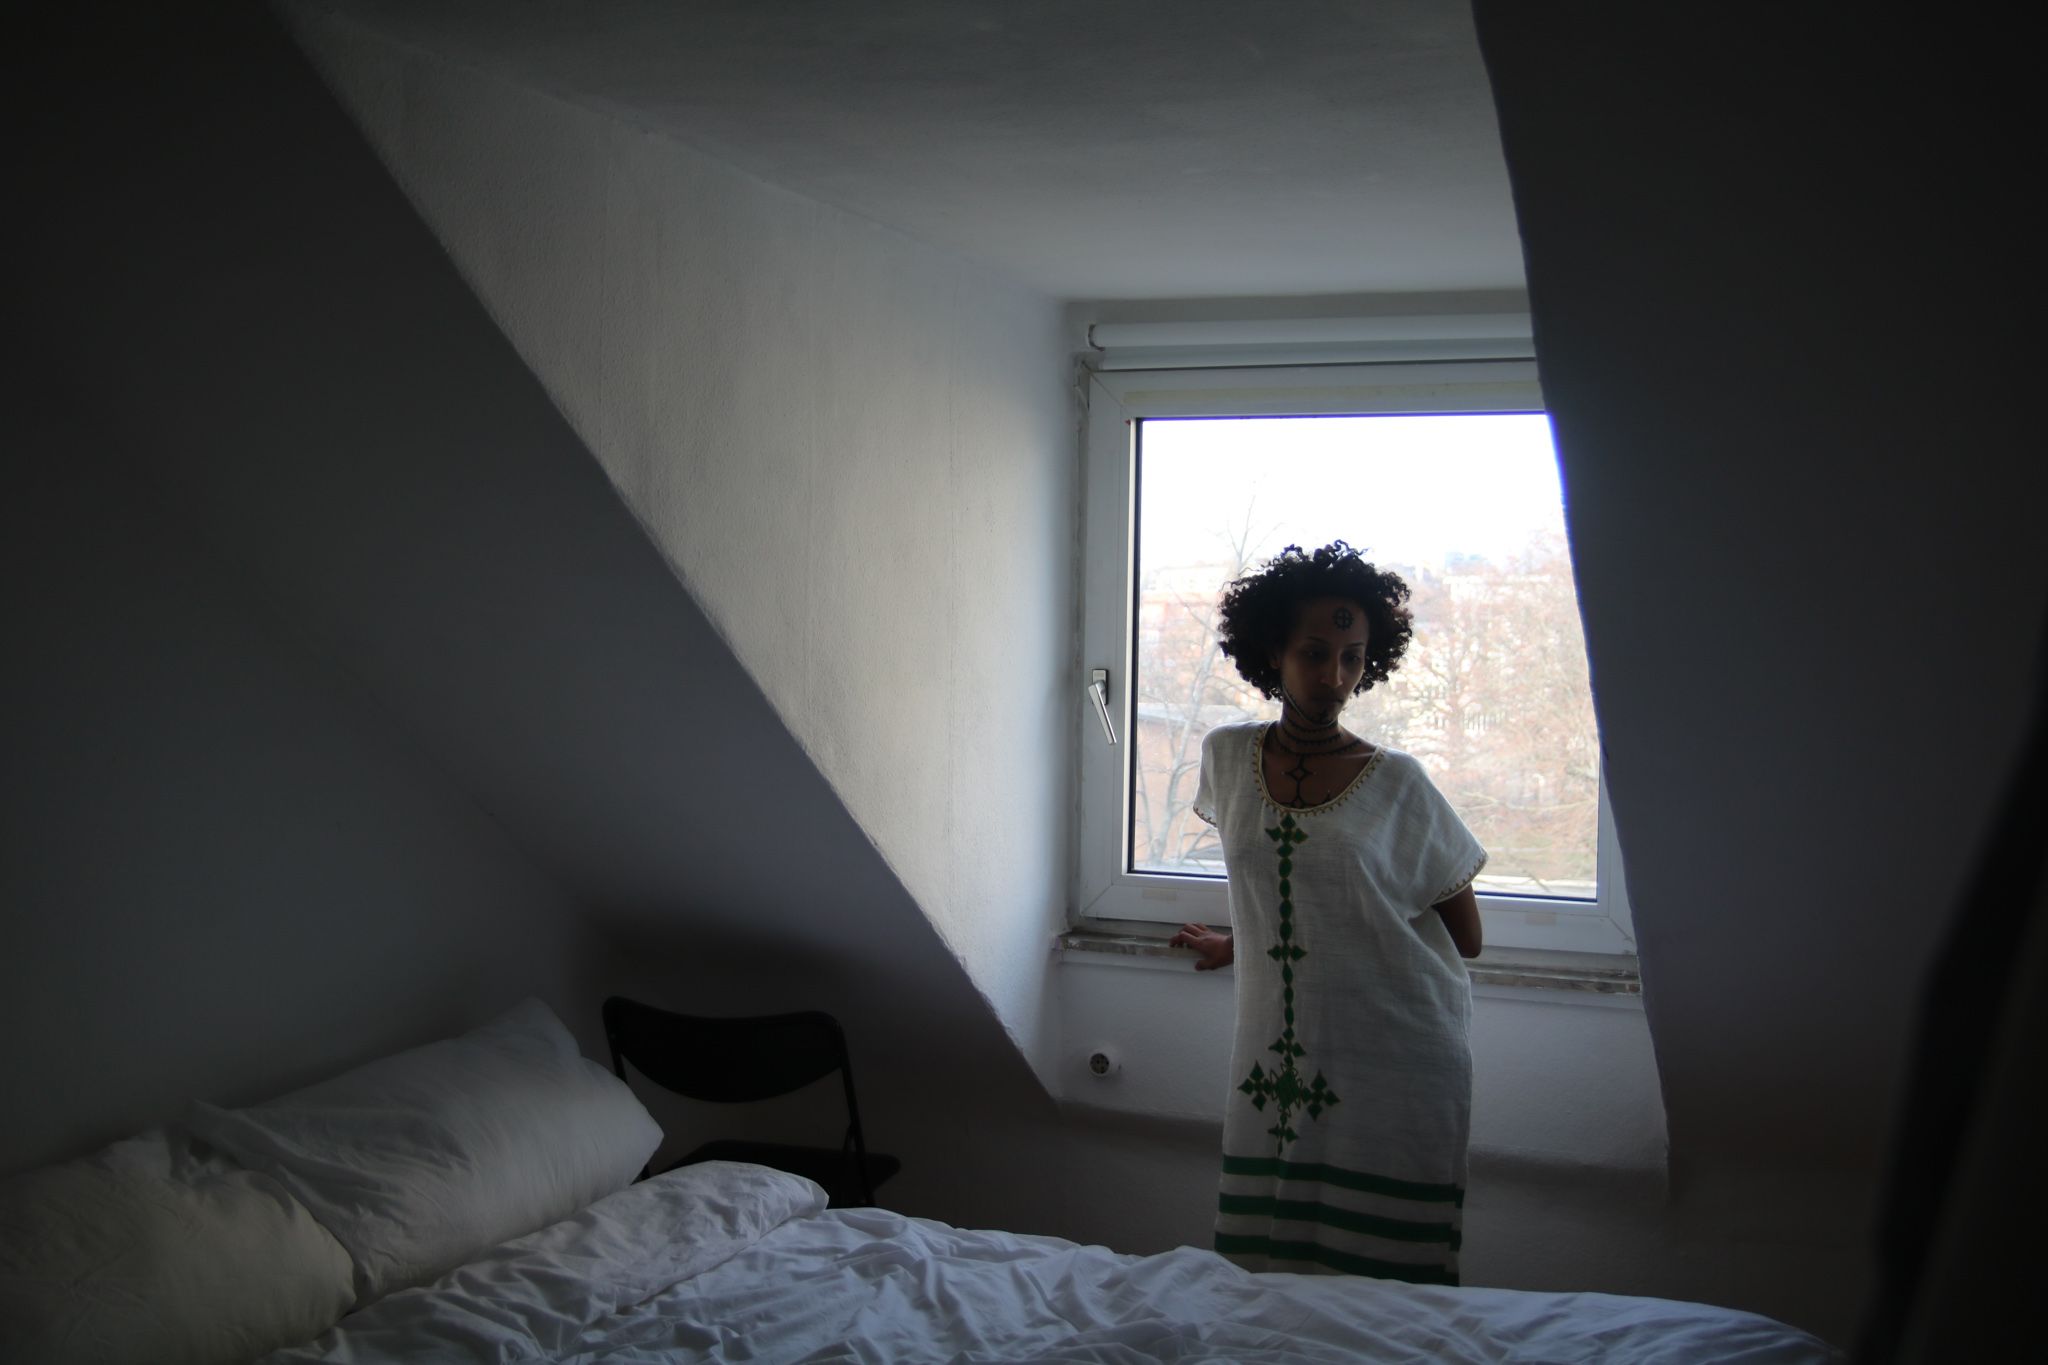 Eine Frau steht im Hintergrund des Bildes vor einem Fenster mit Dachschrägen. Ihr Körper ist dem Raum zugewandt. Vor ihr steht ein Bett. Sie trägt ein weites, weißes Kleid mit grünen Ornamenten. Oberkörper, Hals und Gesicht sind mit Tätowierungen bemalt